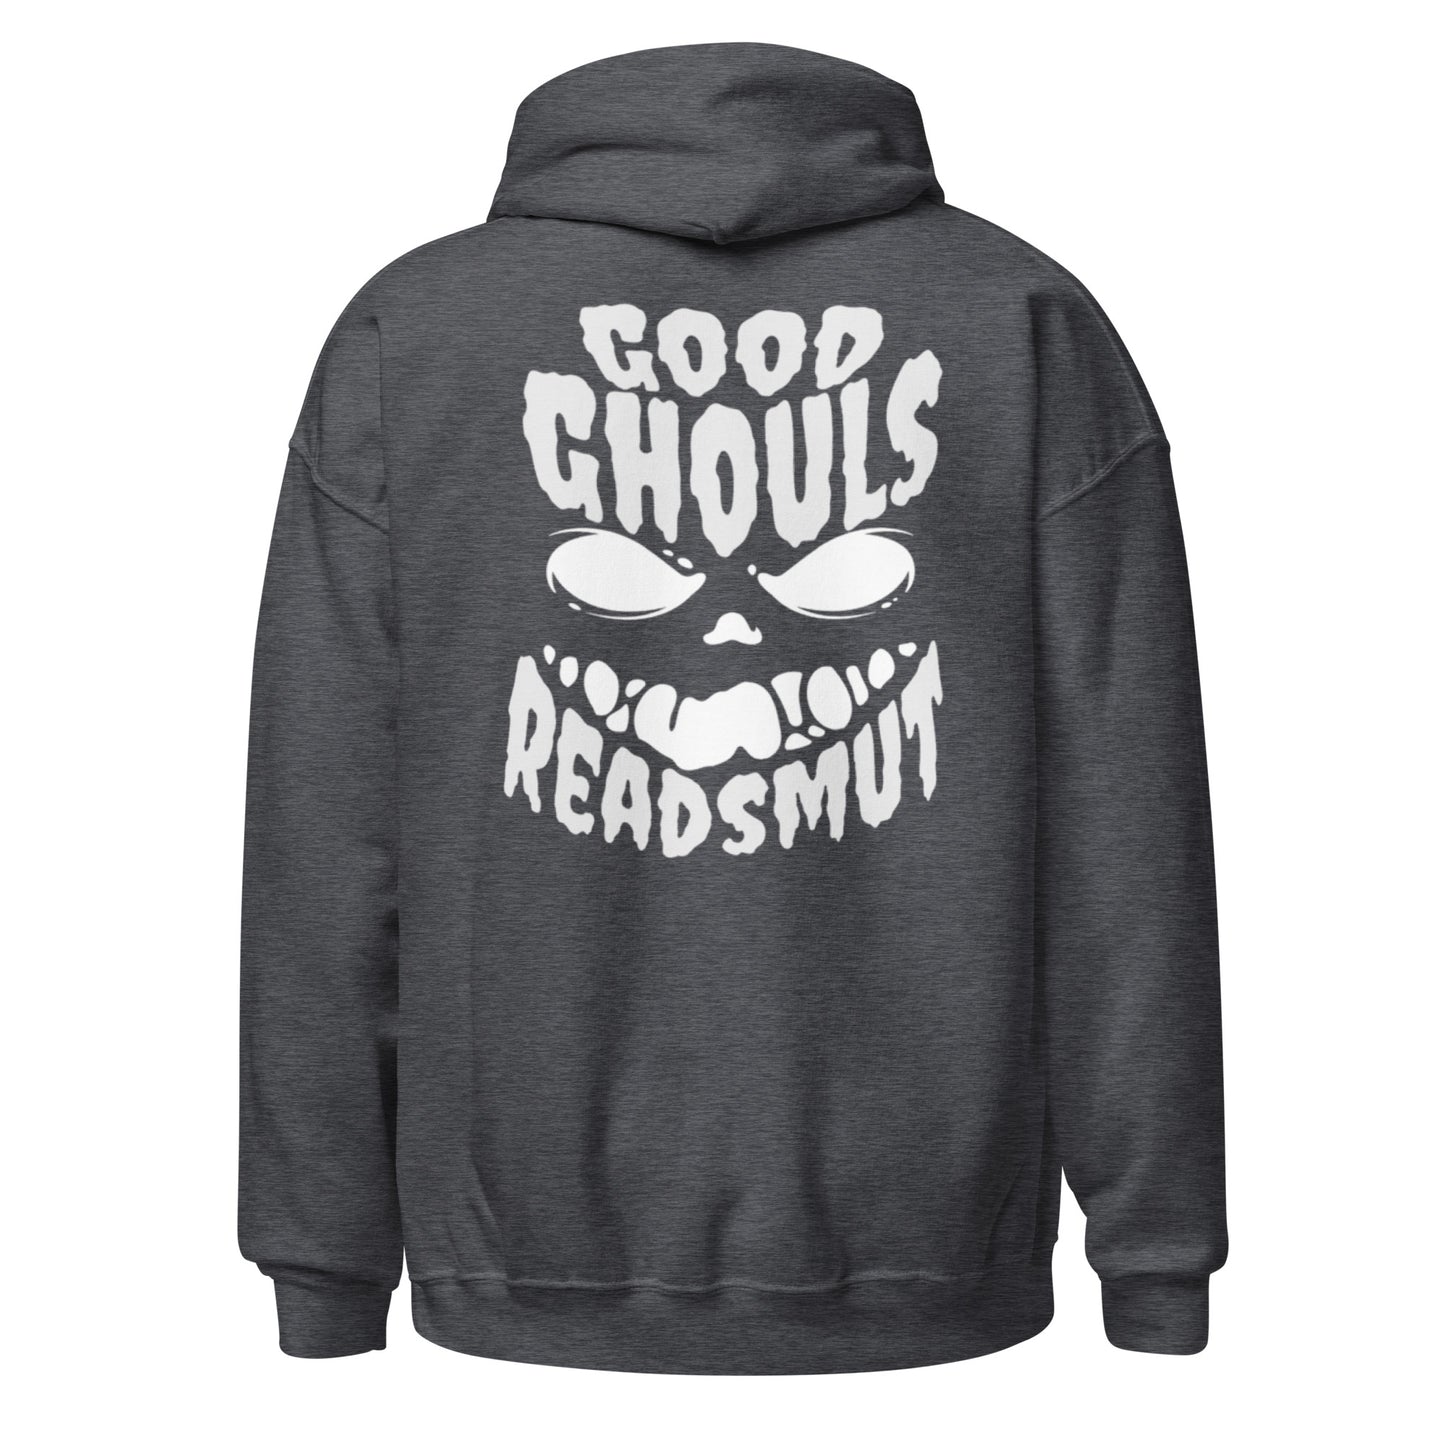 good ghouls read smut hoodie